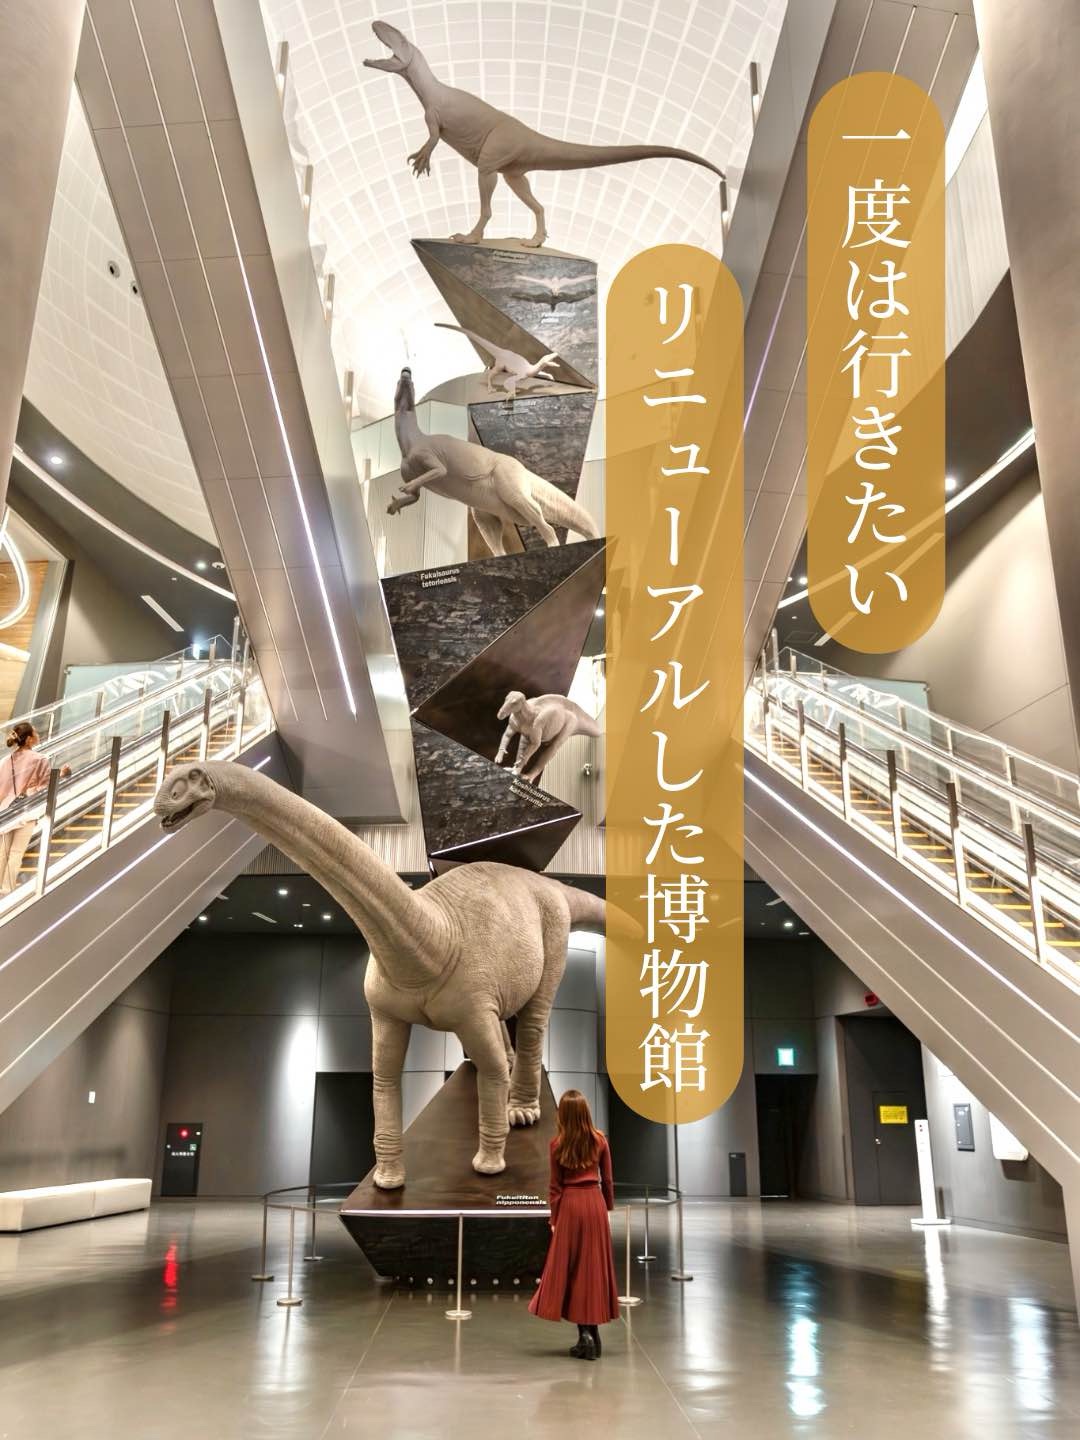 【福井县/胜山市】7月更新!世界三大恐龙博物馆